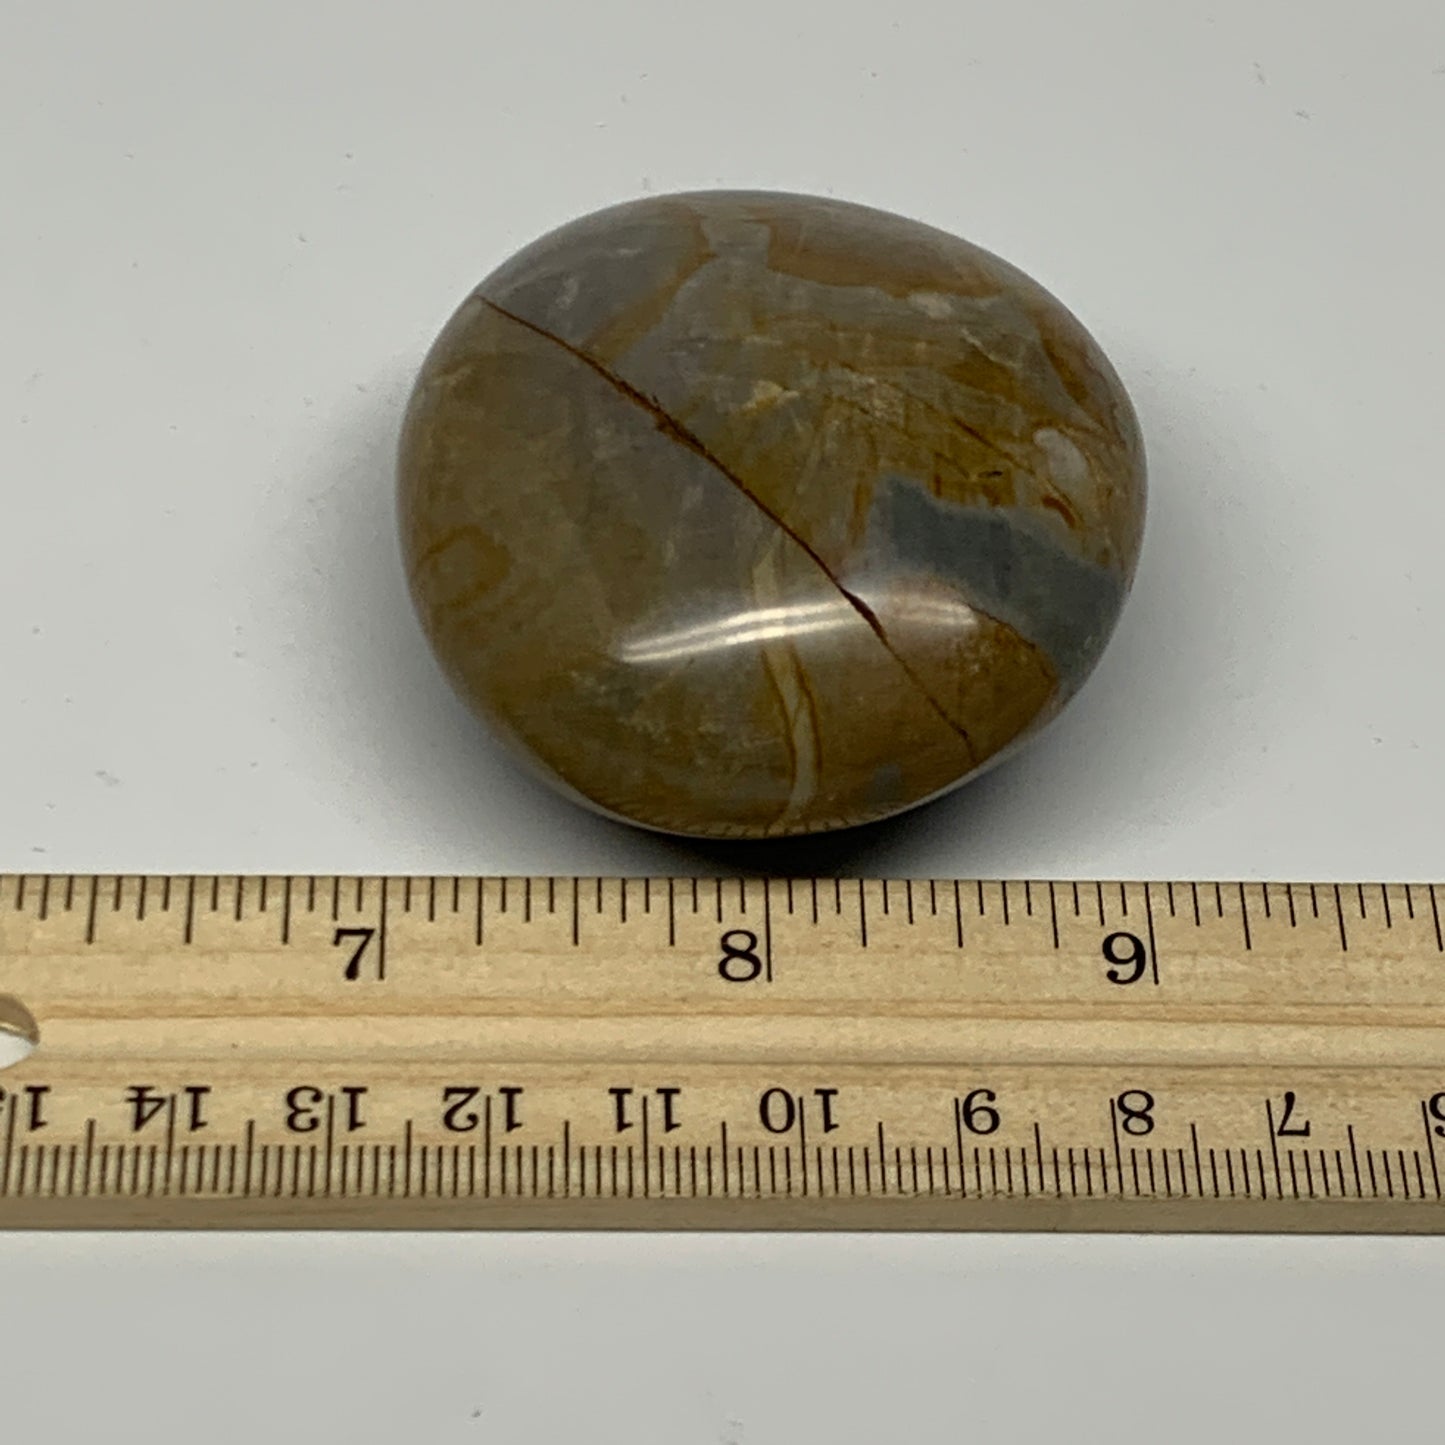 114.3g, 2.3"x2"x1.1" Polychrome Jasper Palm-Stone Reiki @Madagascar, B24493